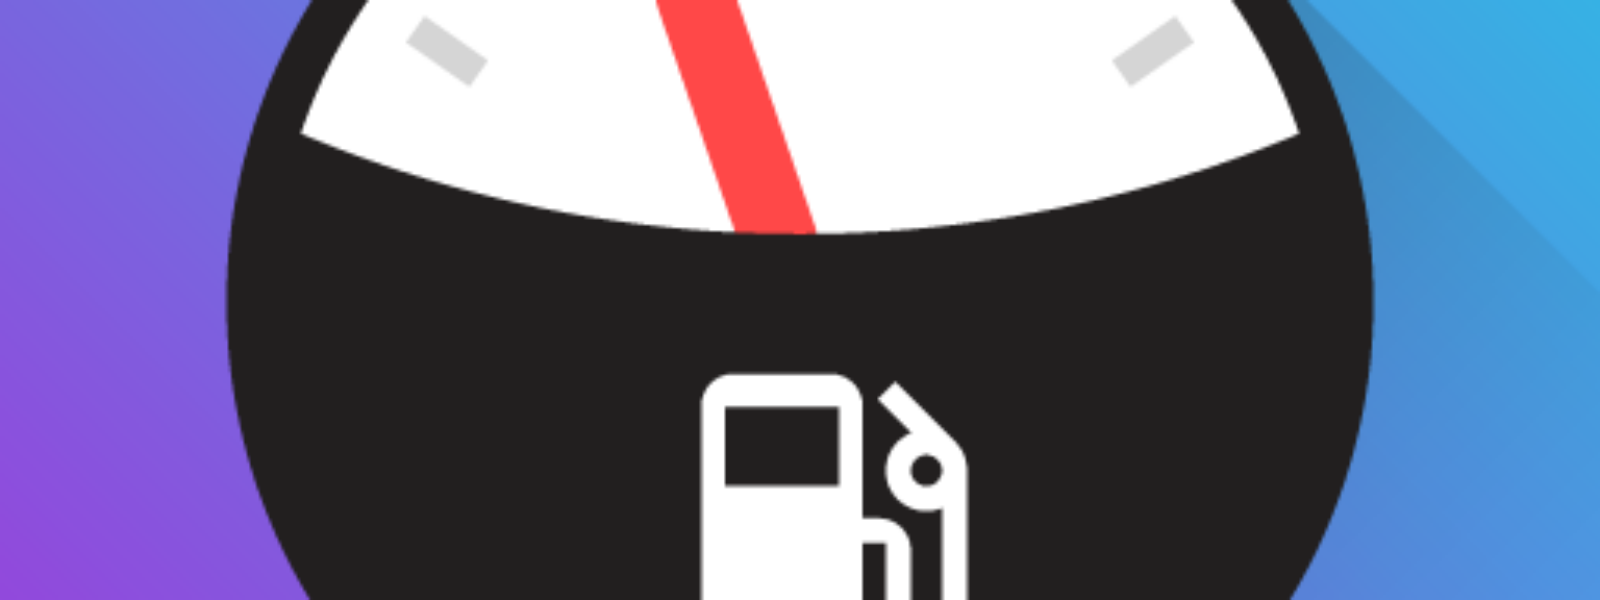 Fuelio: combustibil şi costuri4,6star pentru Android | iOS